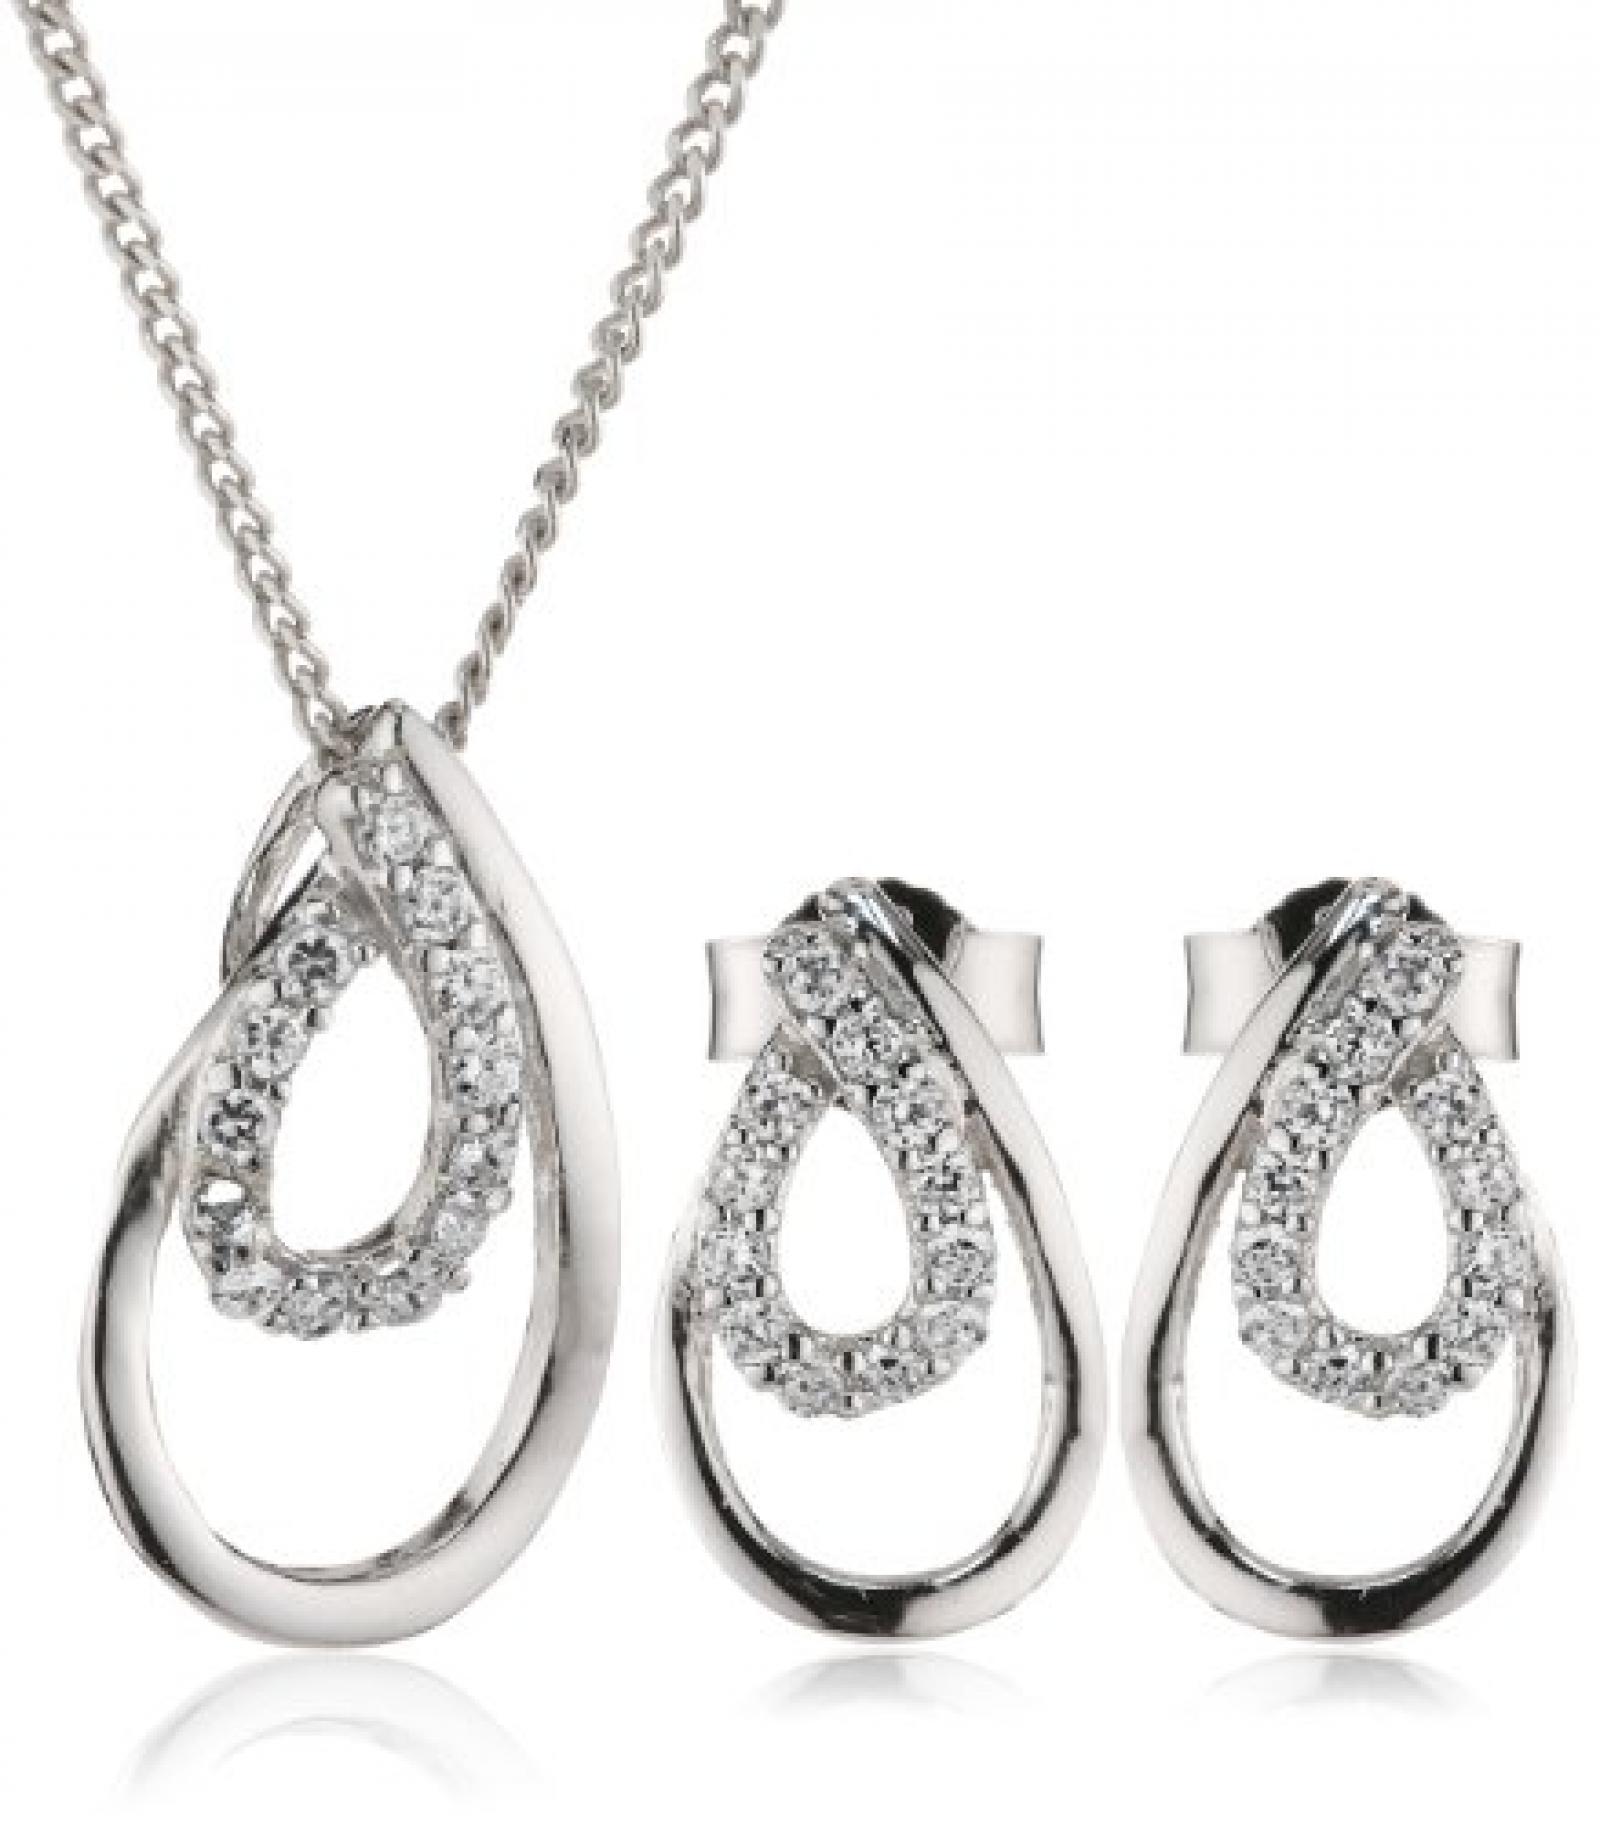 Celesta Damen-Set: Halskette + Ohrringe 925 Sterling Silber rhodiniert Zirkonia Celesta 42 cm weiß 500201366-42 